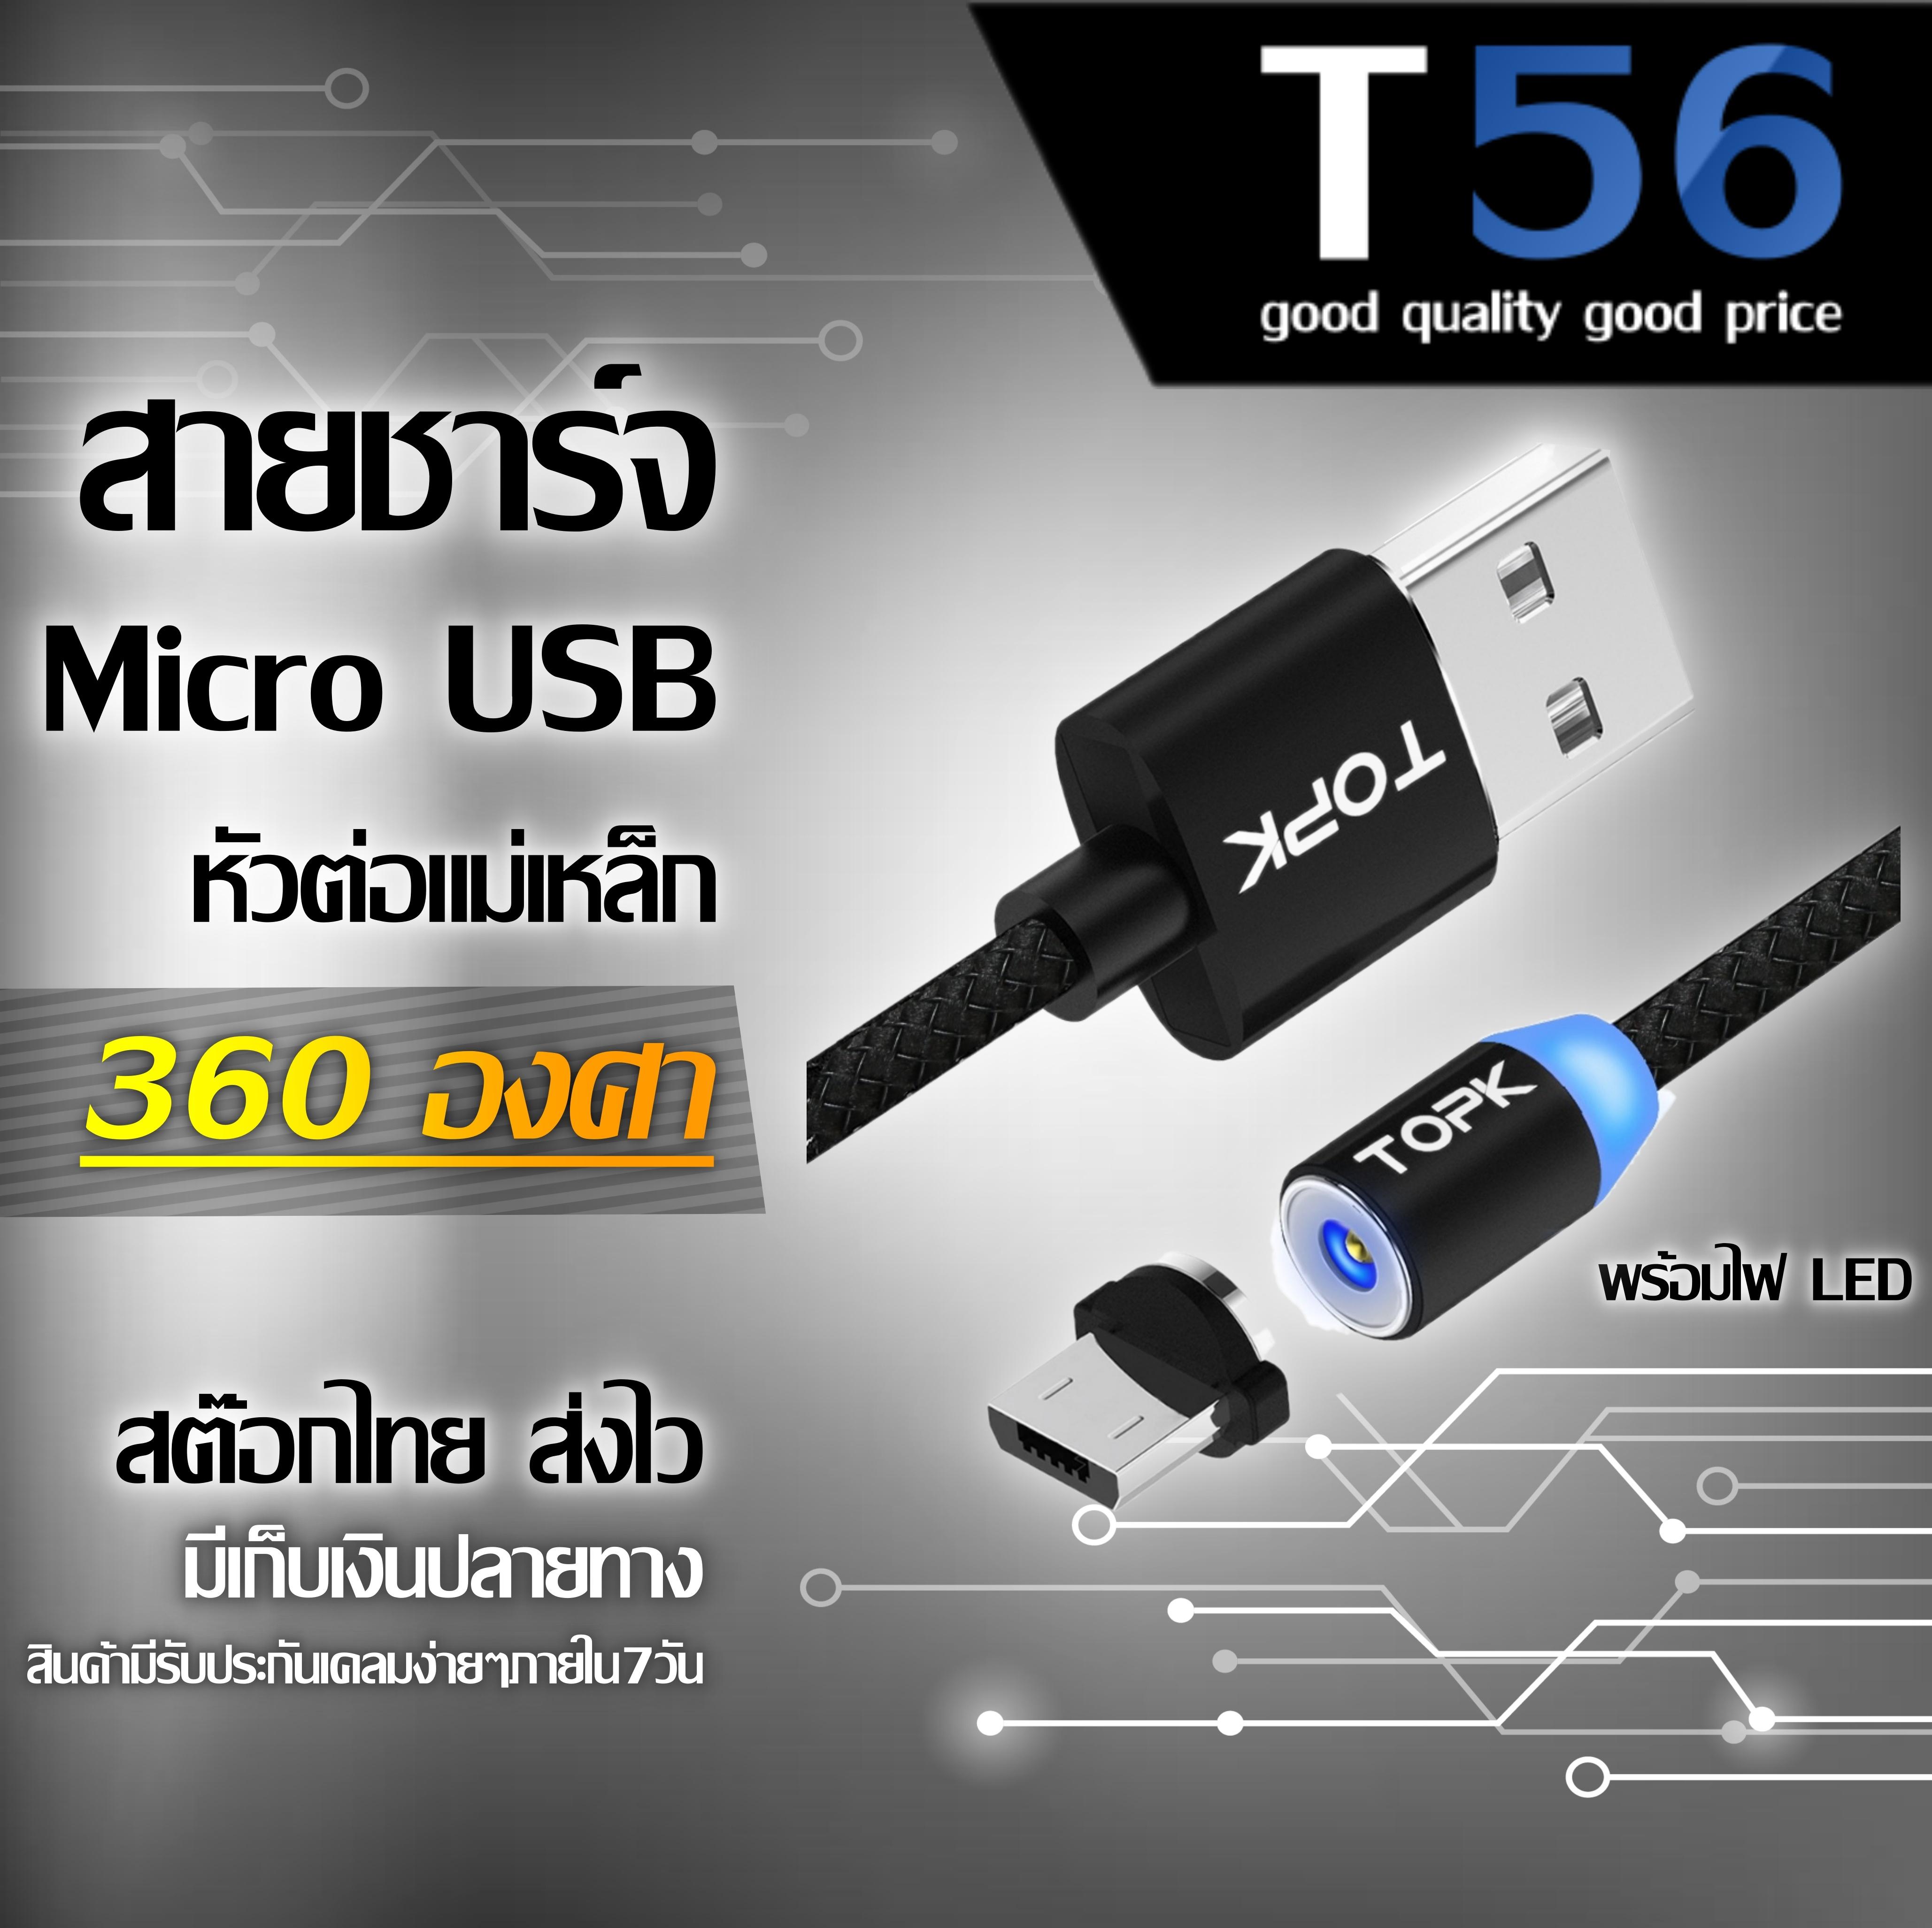 สายชาร์จแบต Micro USB หัวแม่เหล็กทนทานสูง TOPKแท้ (1 เมตร) 5V/2.4A(Max) เปียถัก ชาร์จแอนดรอยด์ ซัมซุง วีโว่ อ้อปโป้